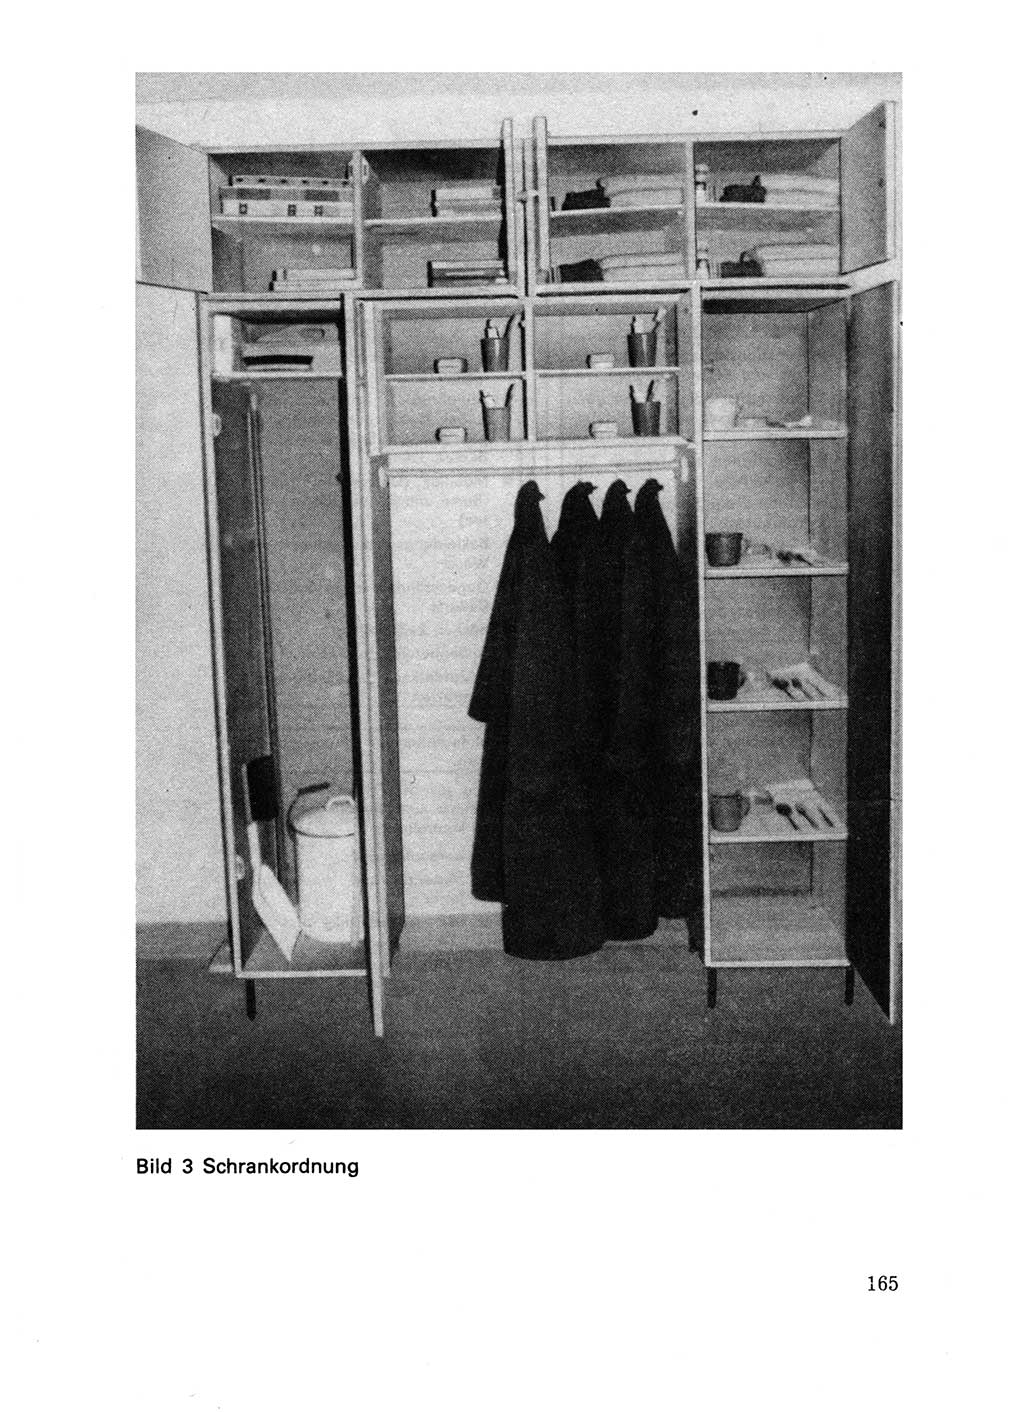 Handbuch für operative Dienste, Abteilung Strafvollzug (SV) [Ministerium des Innern (MdI) Deutsche Demokratische Republik (DDR)] 1981, Seite 165 (Hb. op. D. Abt. SV MdI DDR 1981, S. 165)